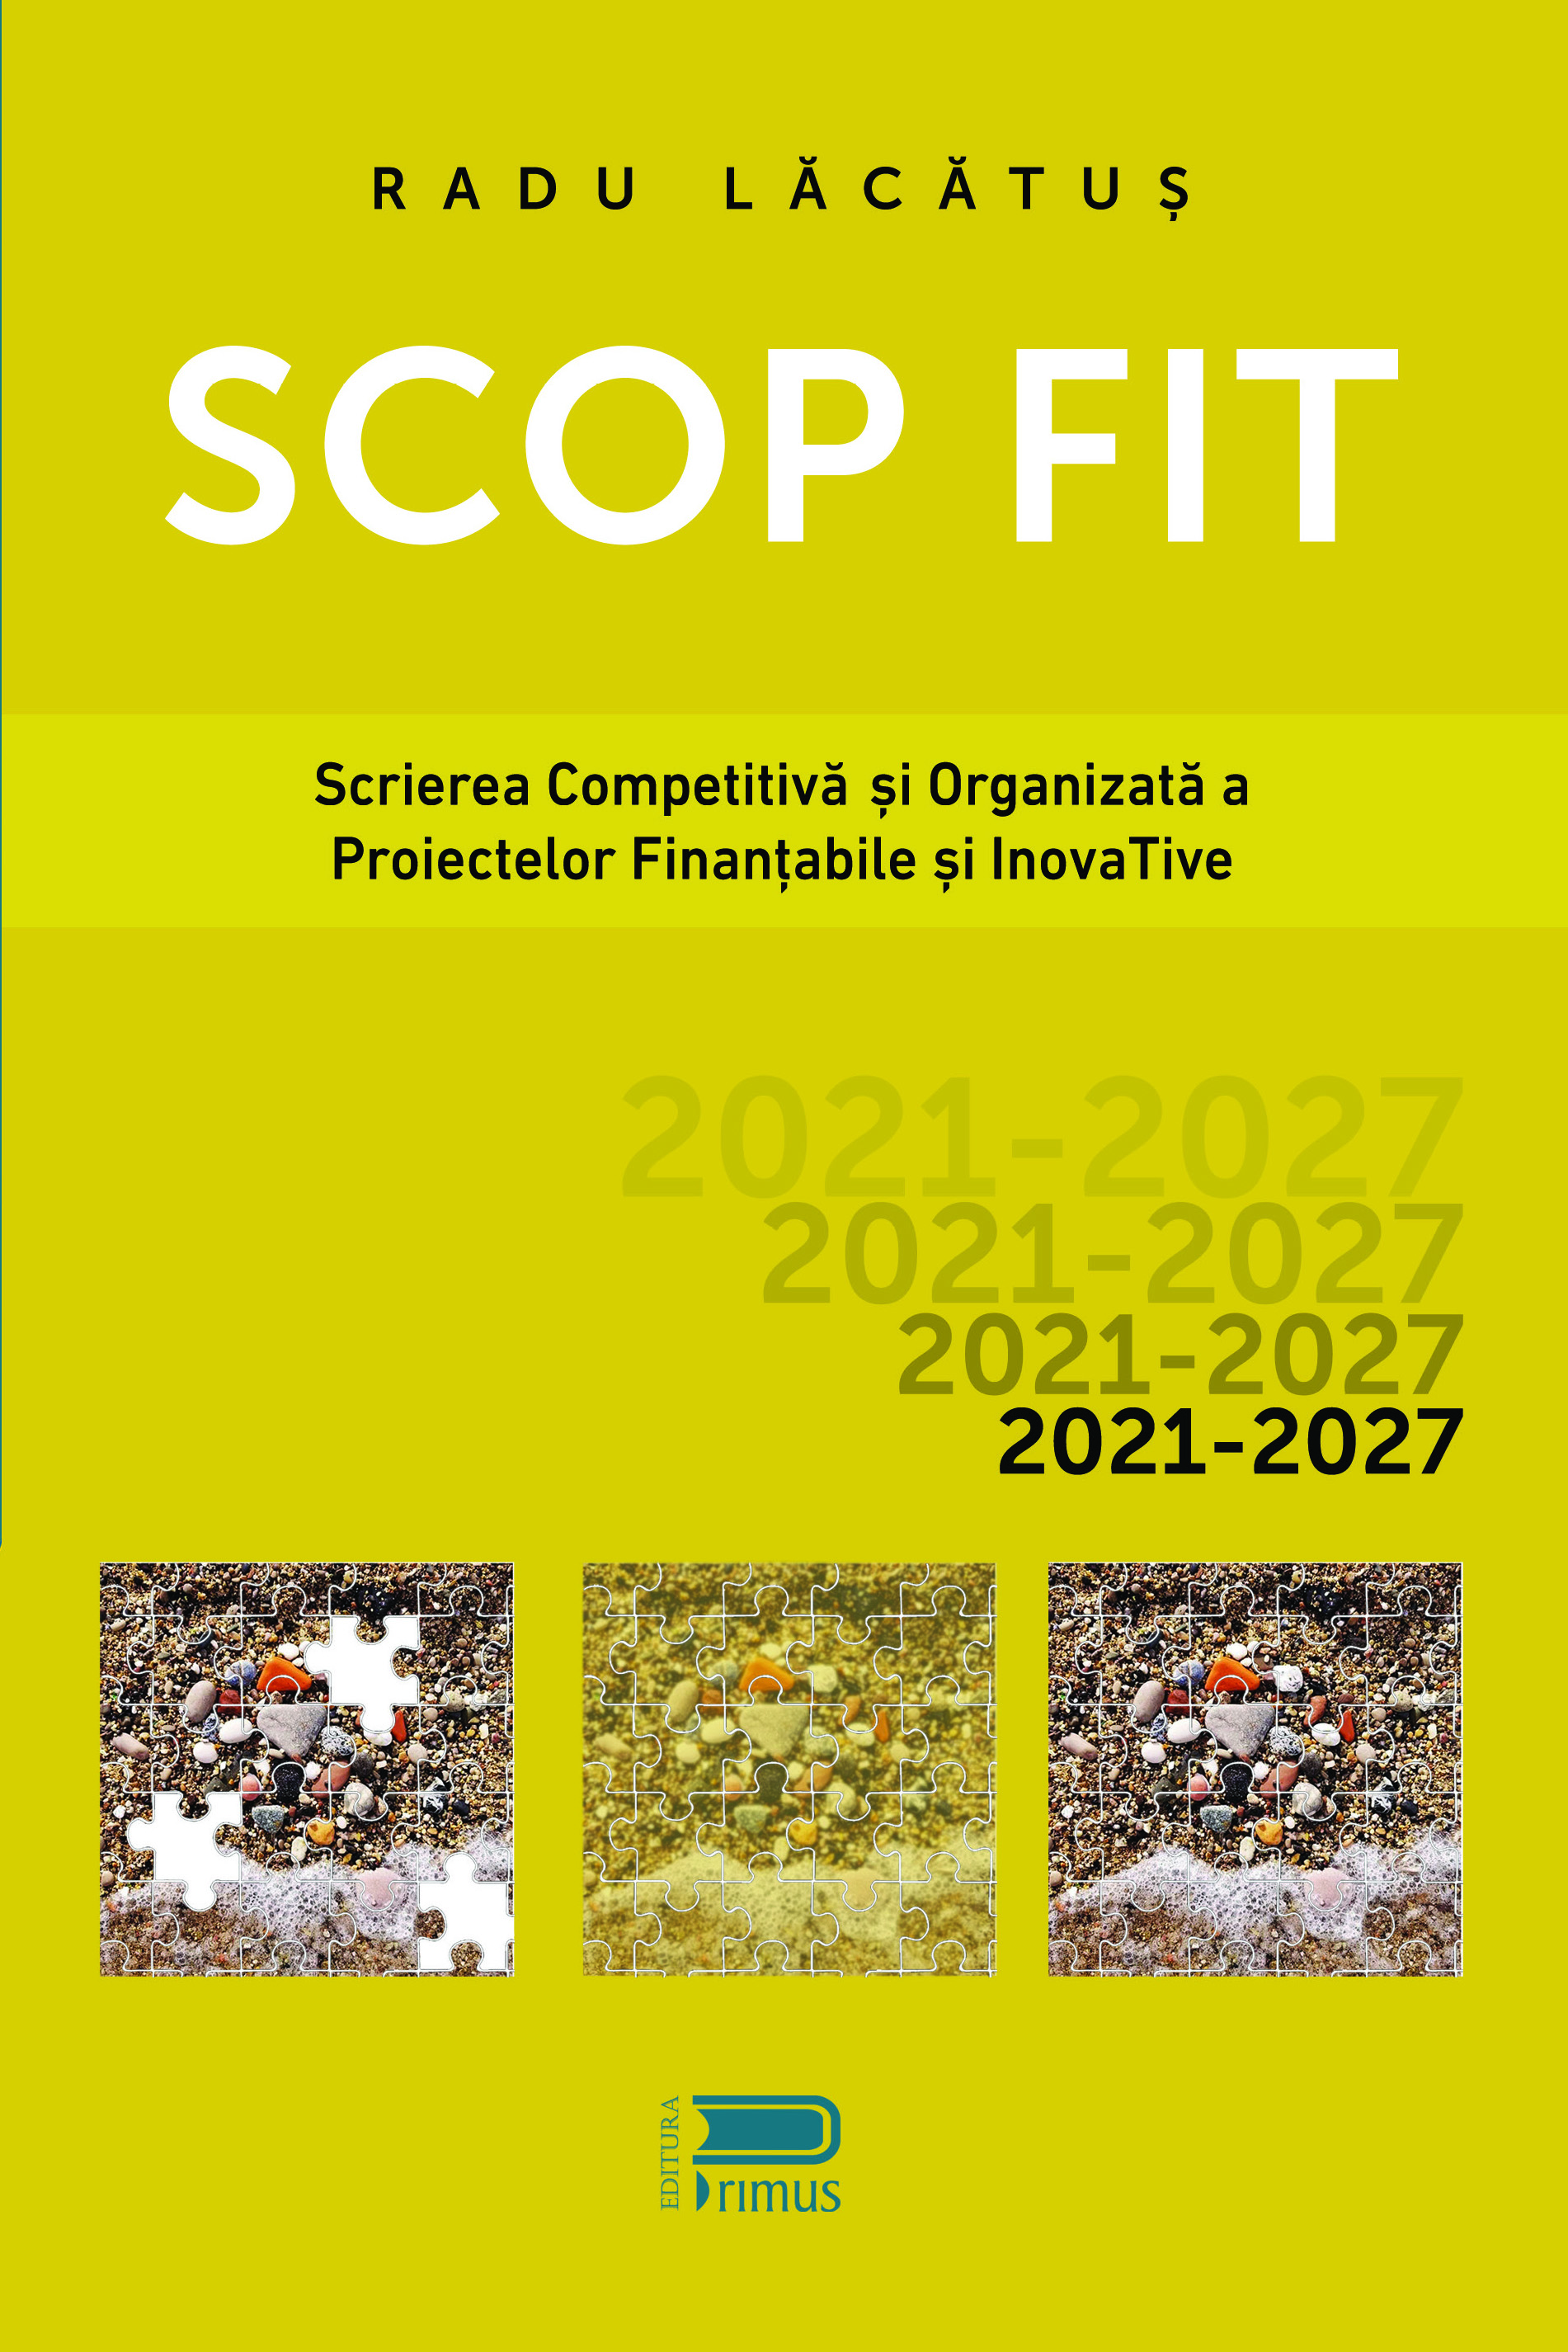 SCOP FIT: Scrierea competitiva si organizata a proiectelor finantabile si inovative | Radu Lacatus carturesti.ro imagine 2022 cartile.ro